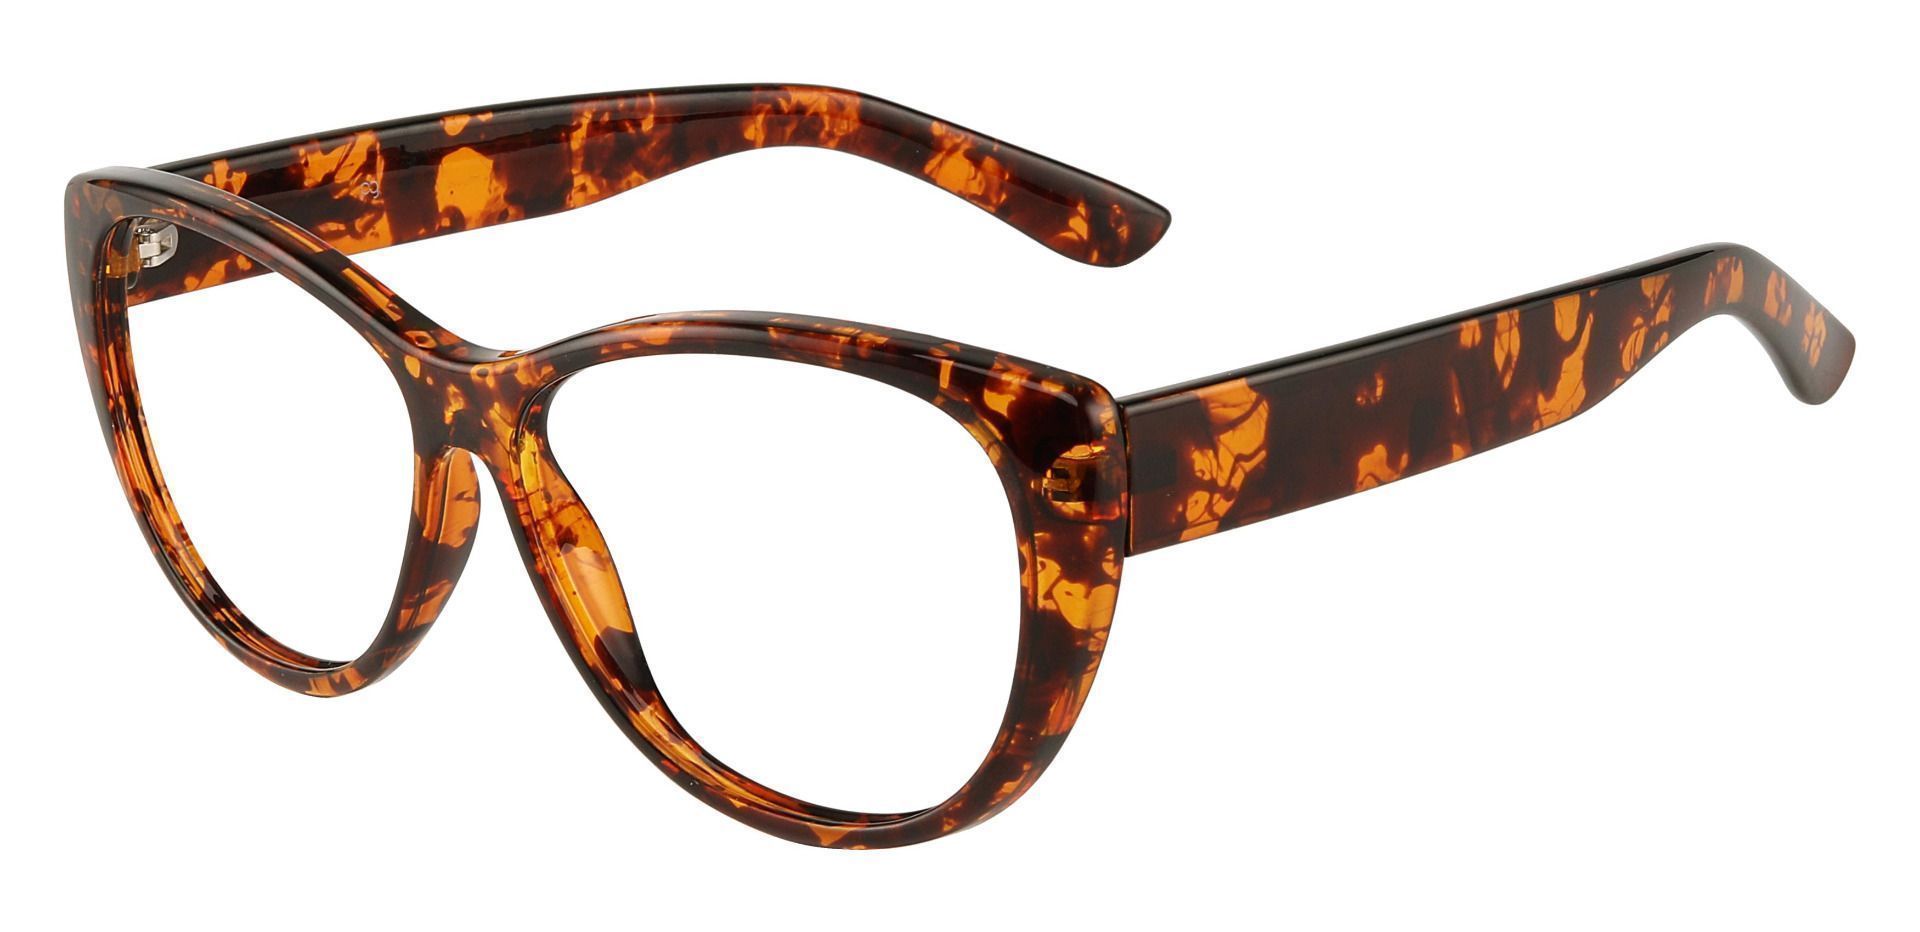 Lynn Cat-Eye Prescription Glasses - Tortoiseshell